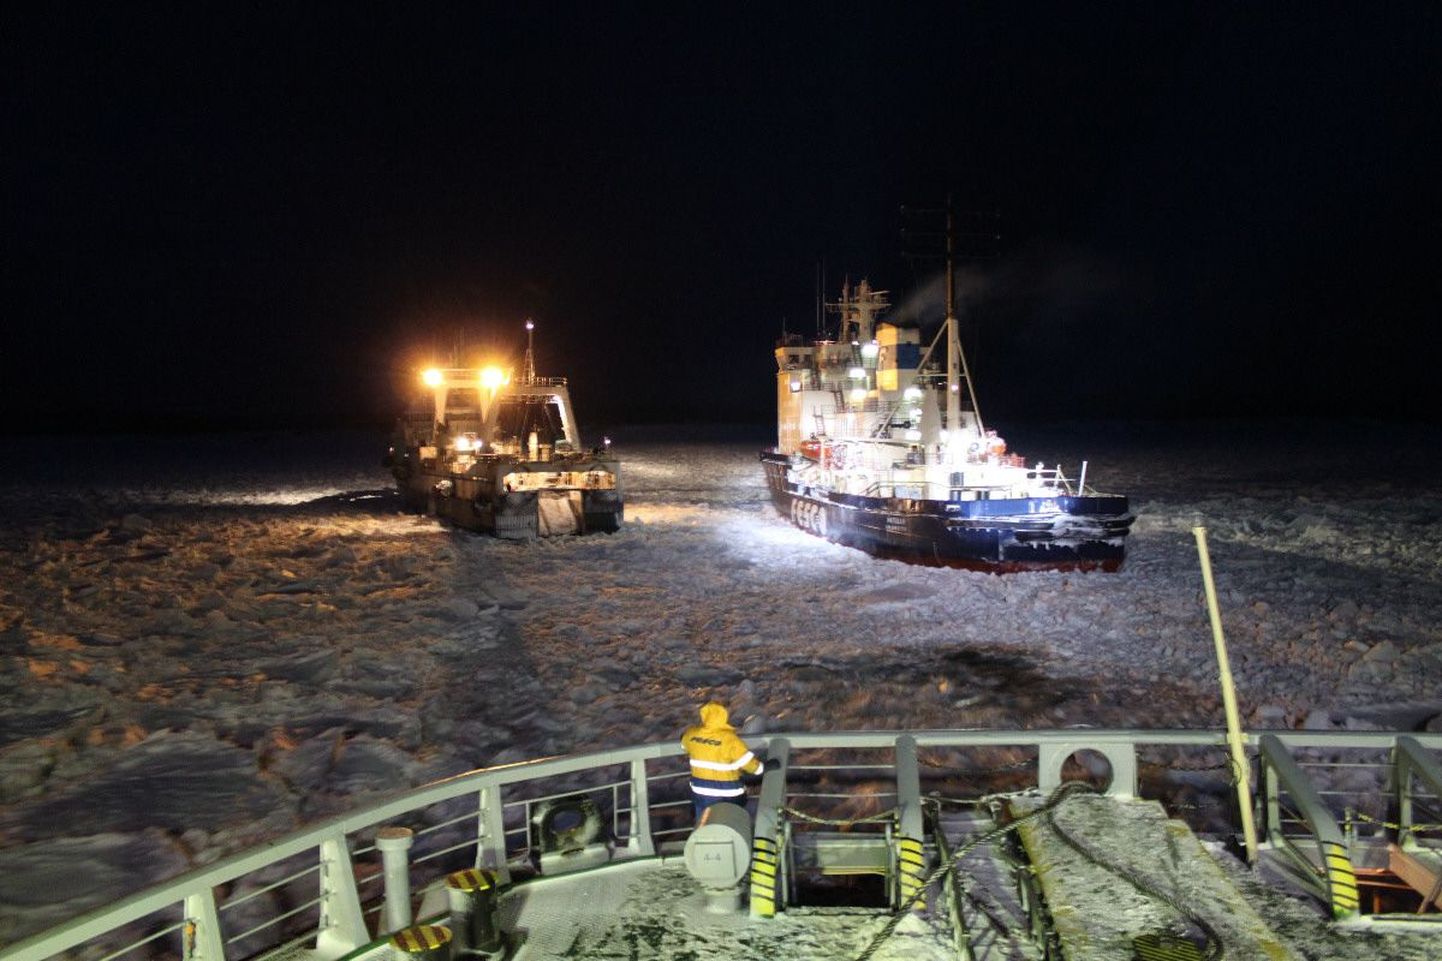 Talvel olid jääolud Ohhoota merel väga rasked ja laevad vajasid pidevalt jäämurdjate abil.